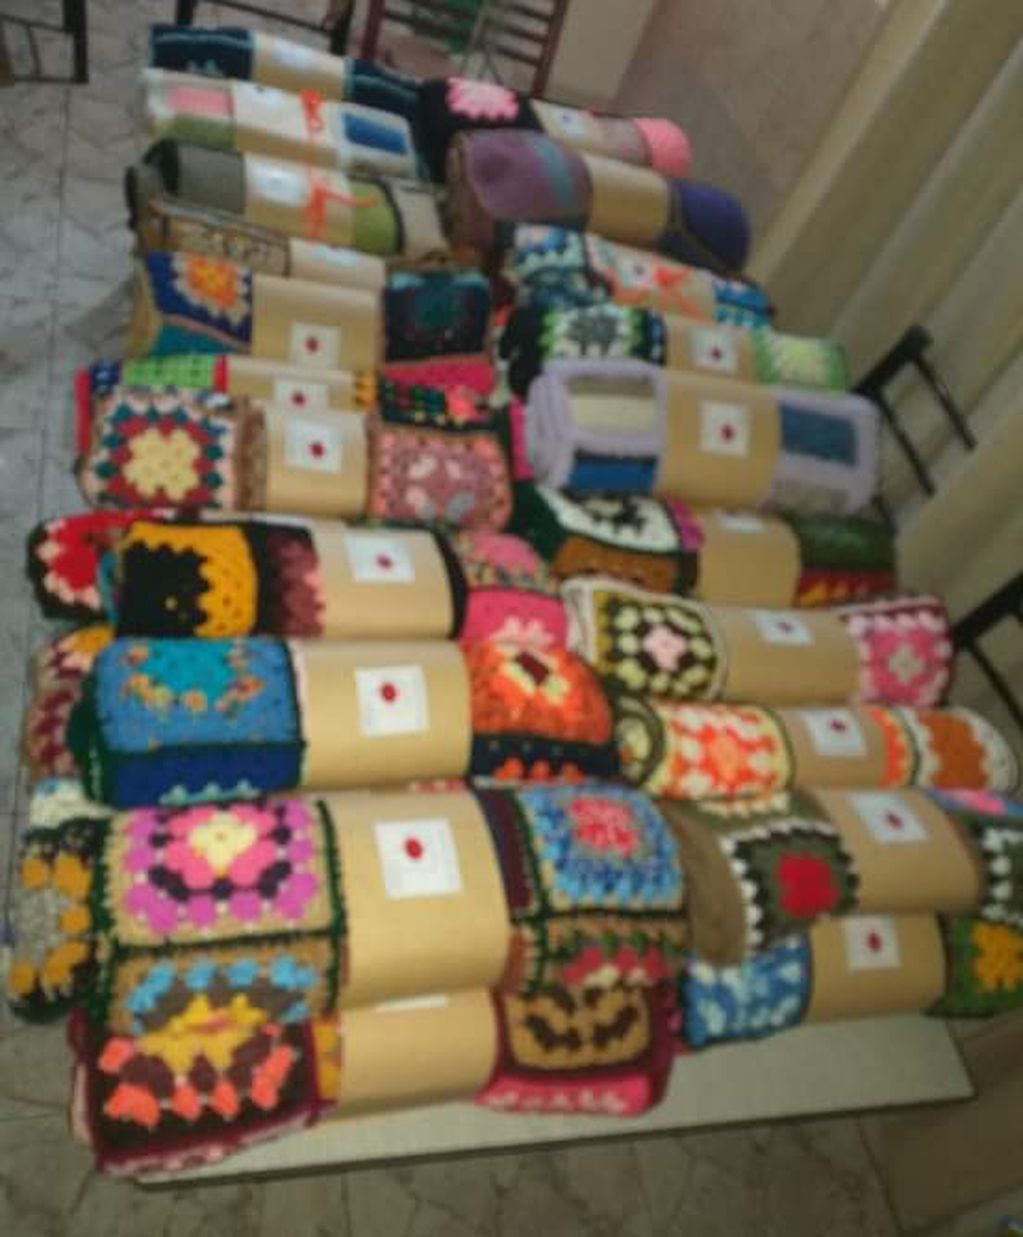 Toda la lana que reciben es utilizada para confeccionar mantas.